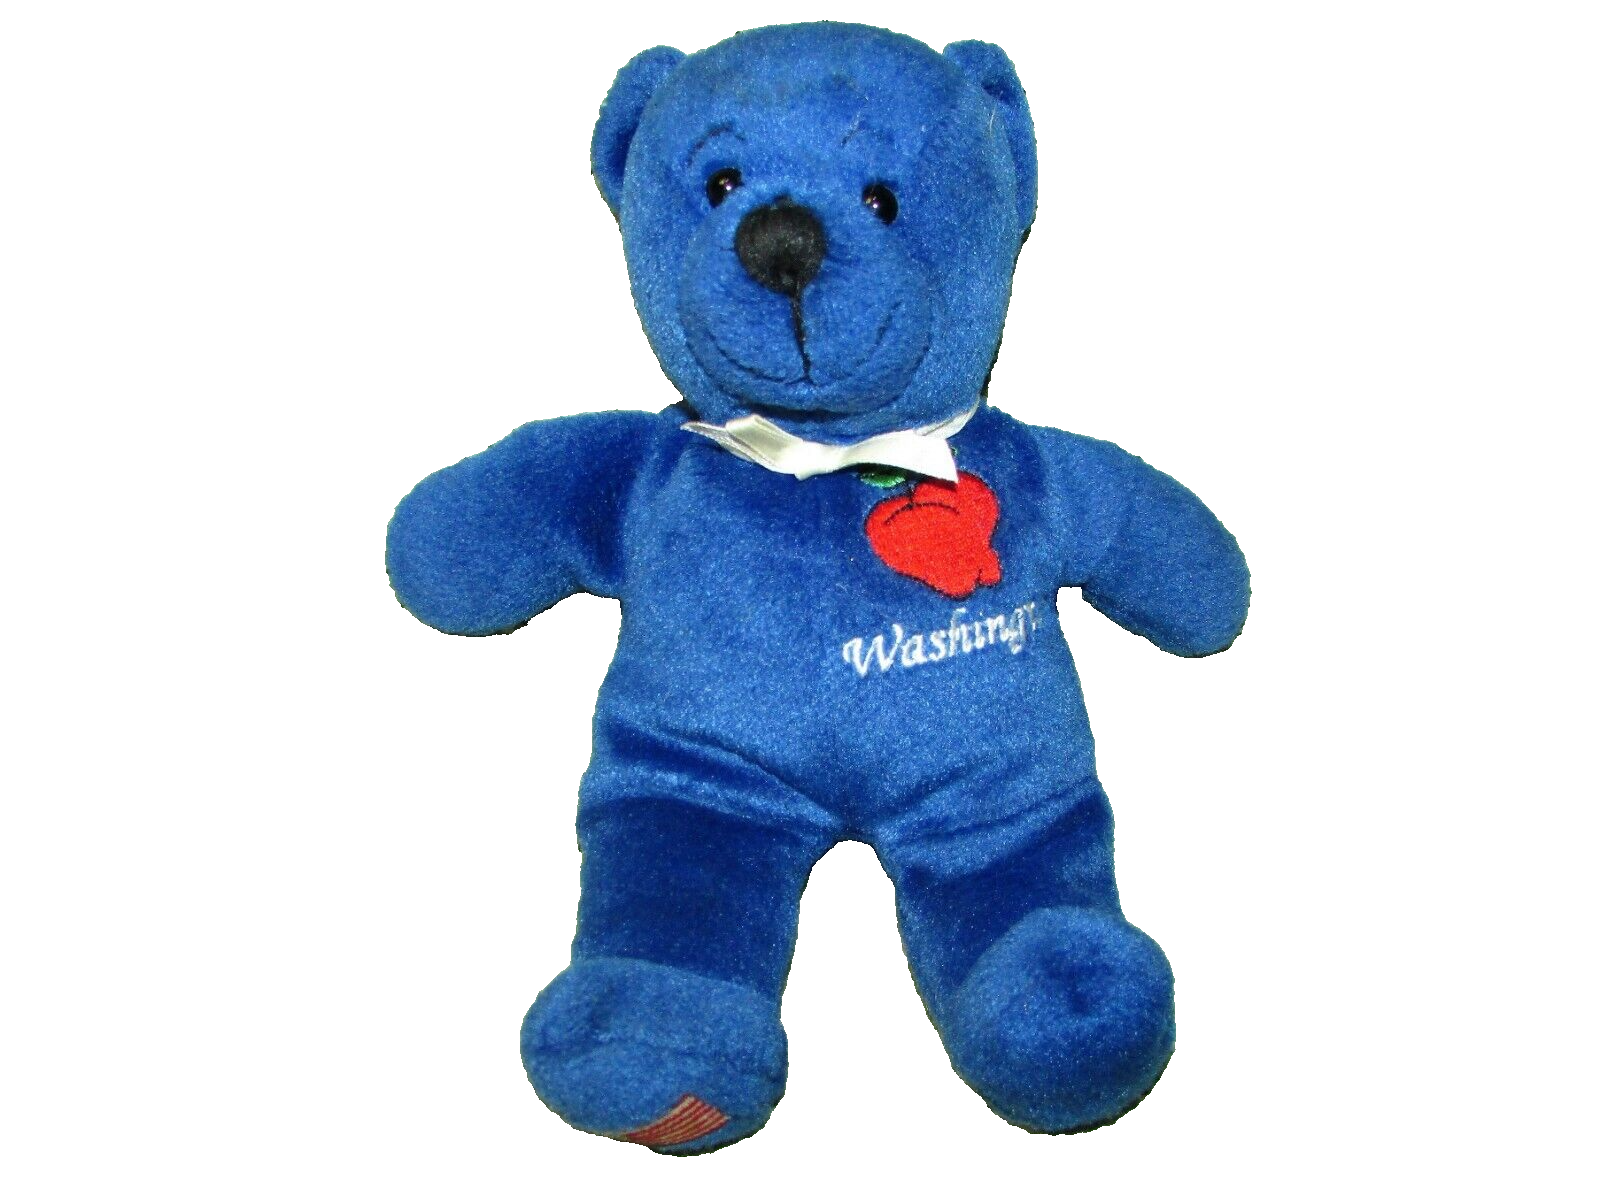 Primary image for SYBOLZ WASHINGTON BEAR BLUE BEANBAG TEDDY 2004 RGU 7" PLUSH STUFFED ANIMAL TOY